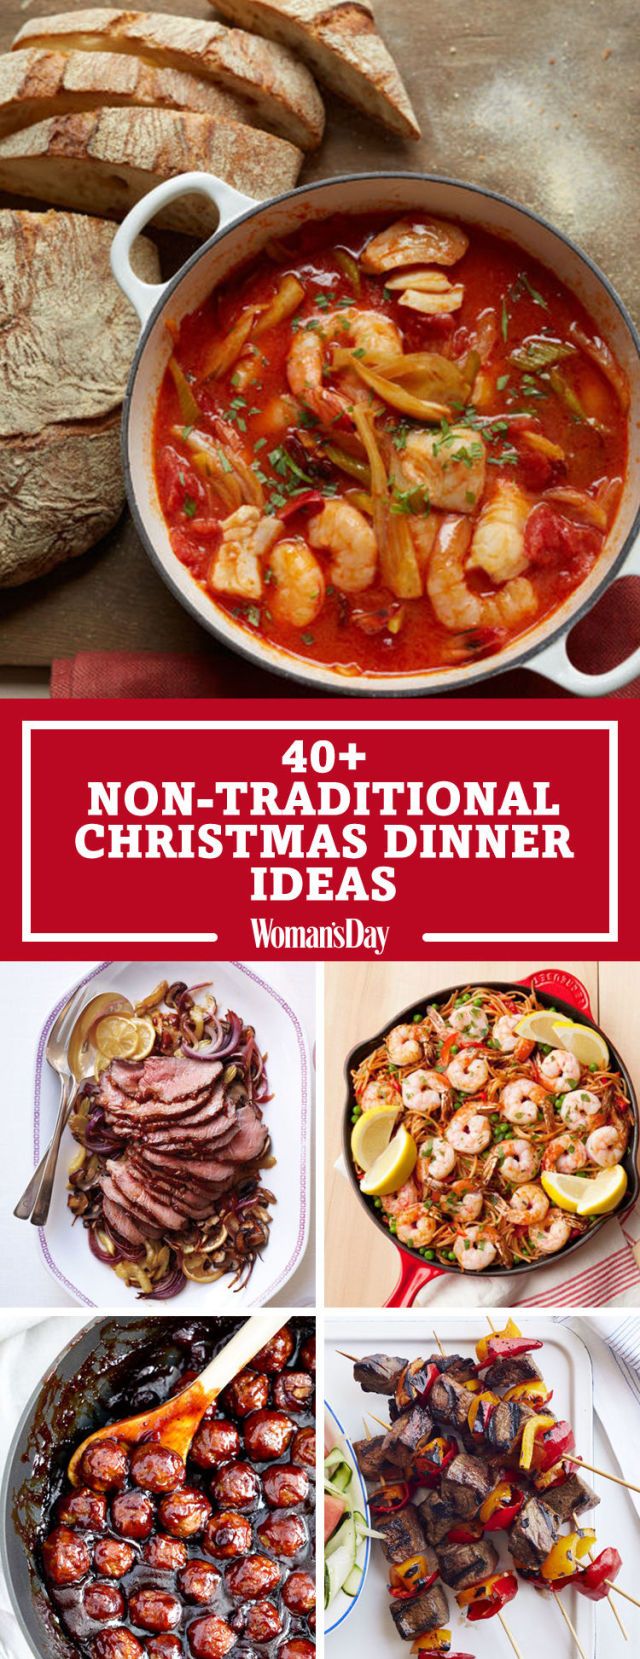 40+ Easy Christmas Dinner Ideas - Best Recipes for Christmas Dinner